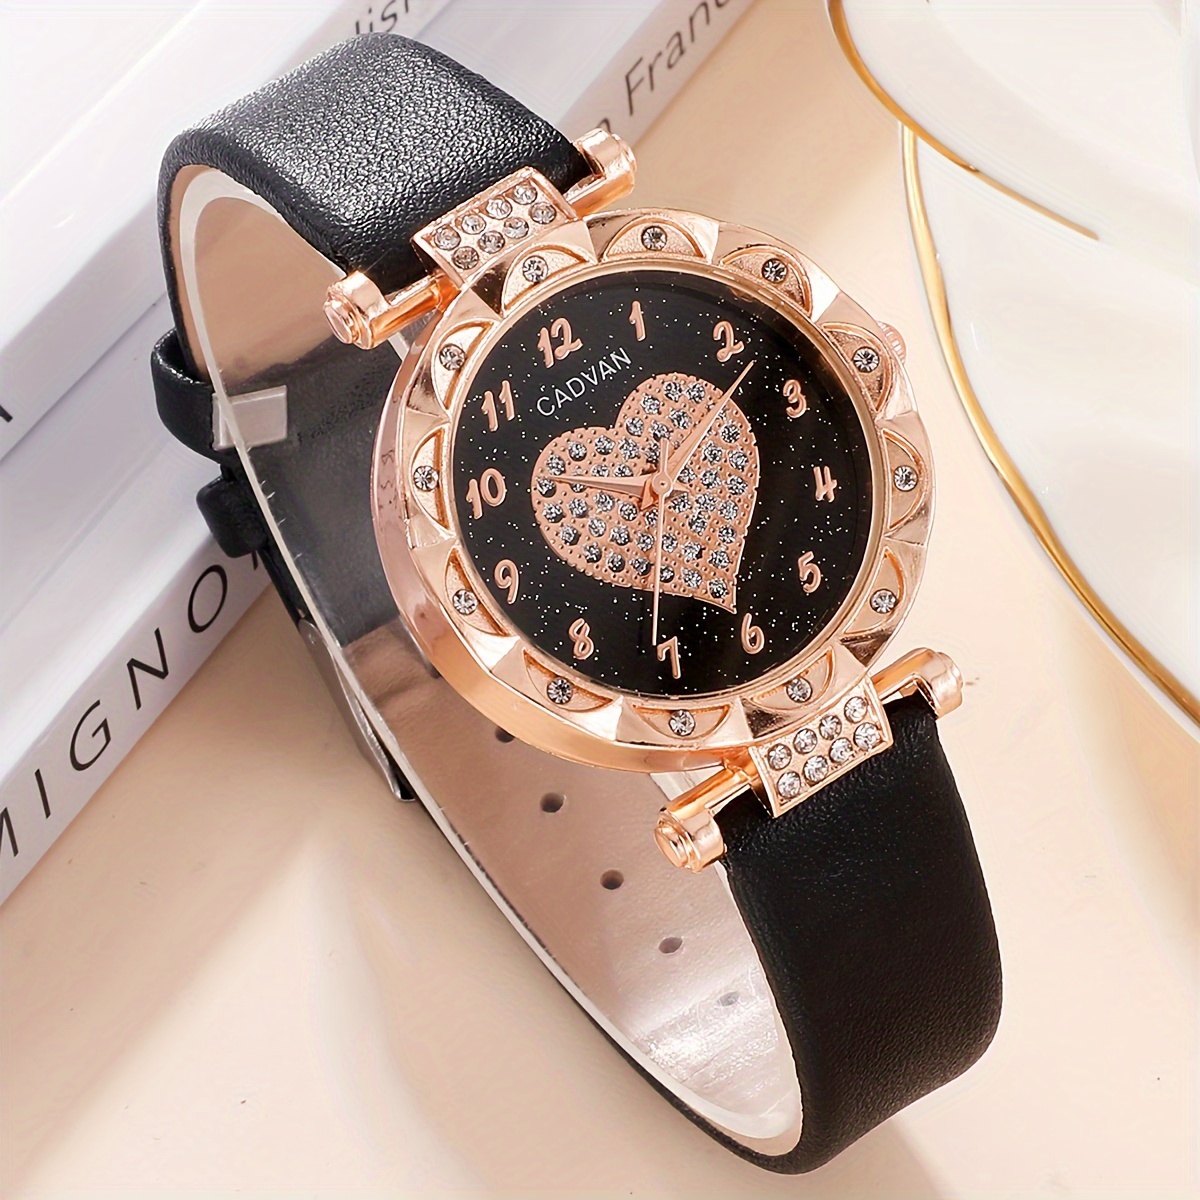 腕時計 レディース セット ハート型時計 クォーツ レディース用ジュエリーセット 5点入り 女性への最適なプレゼント - レディース腕時計